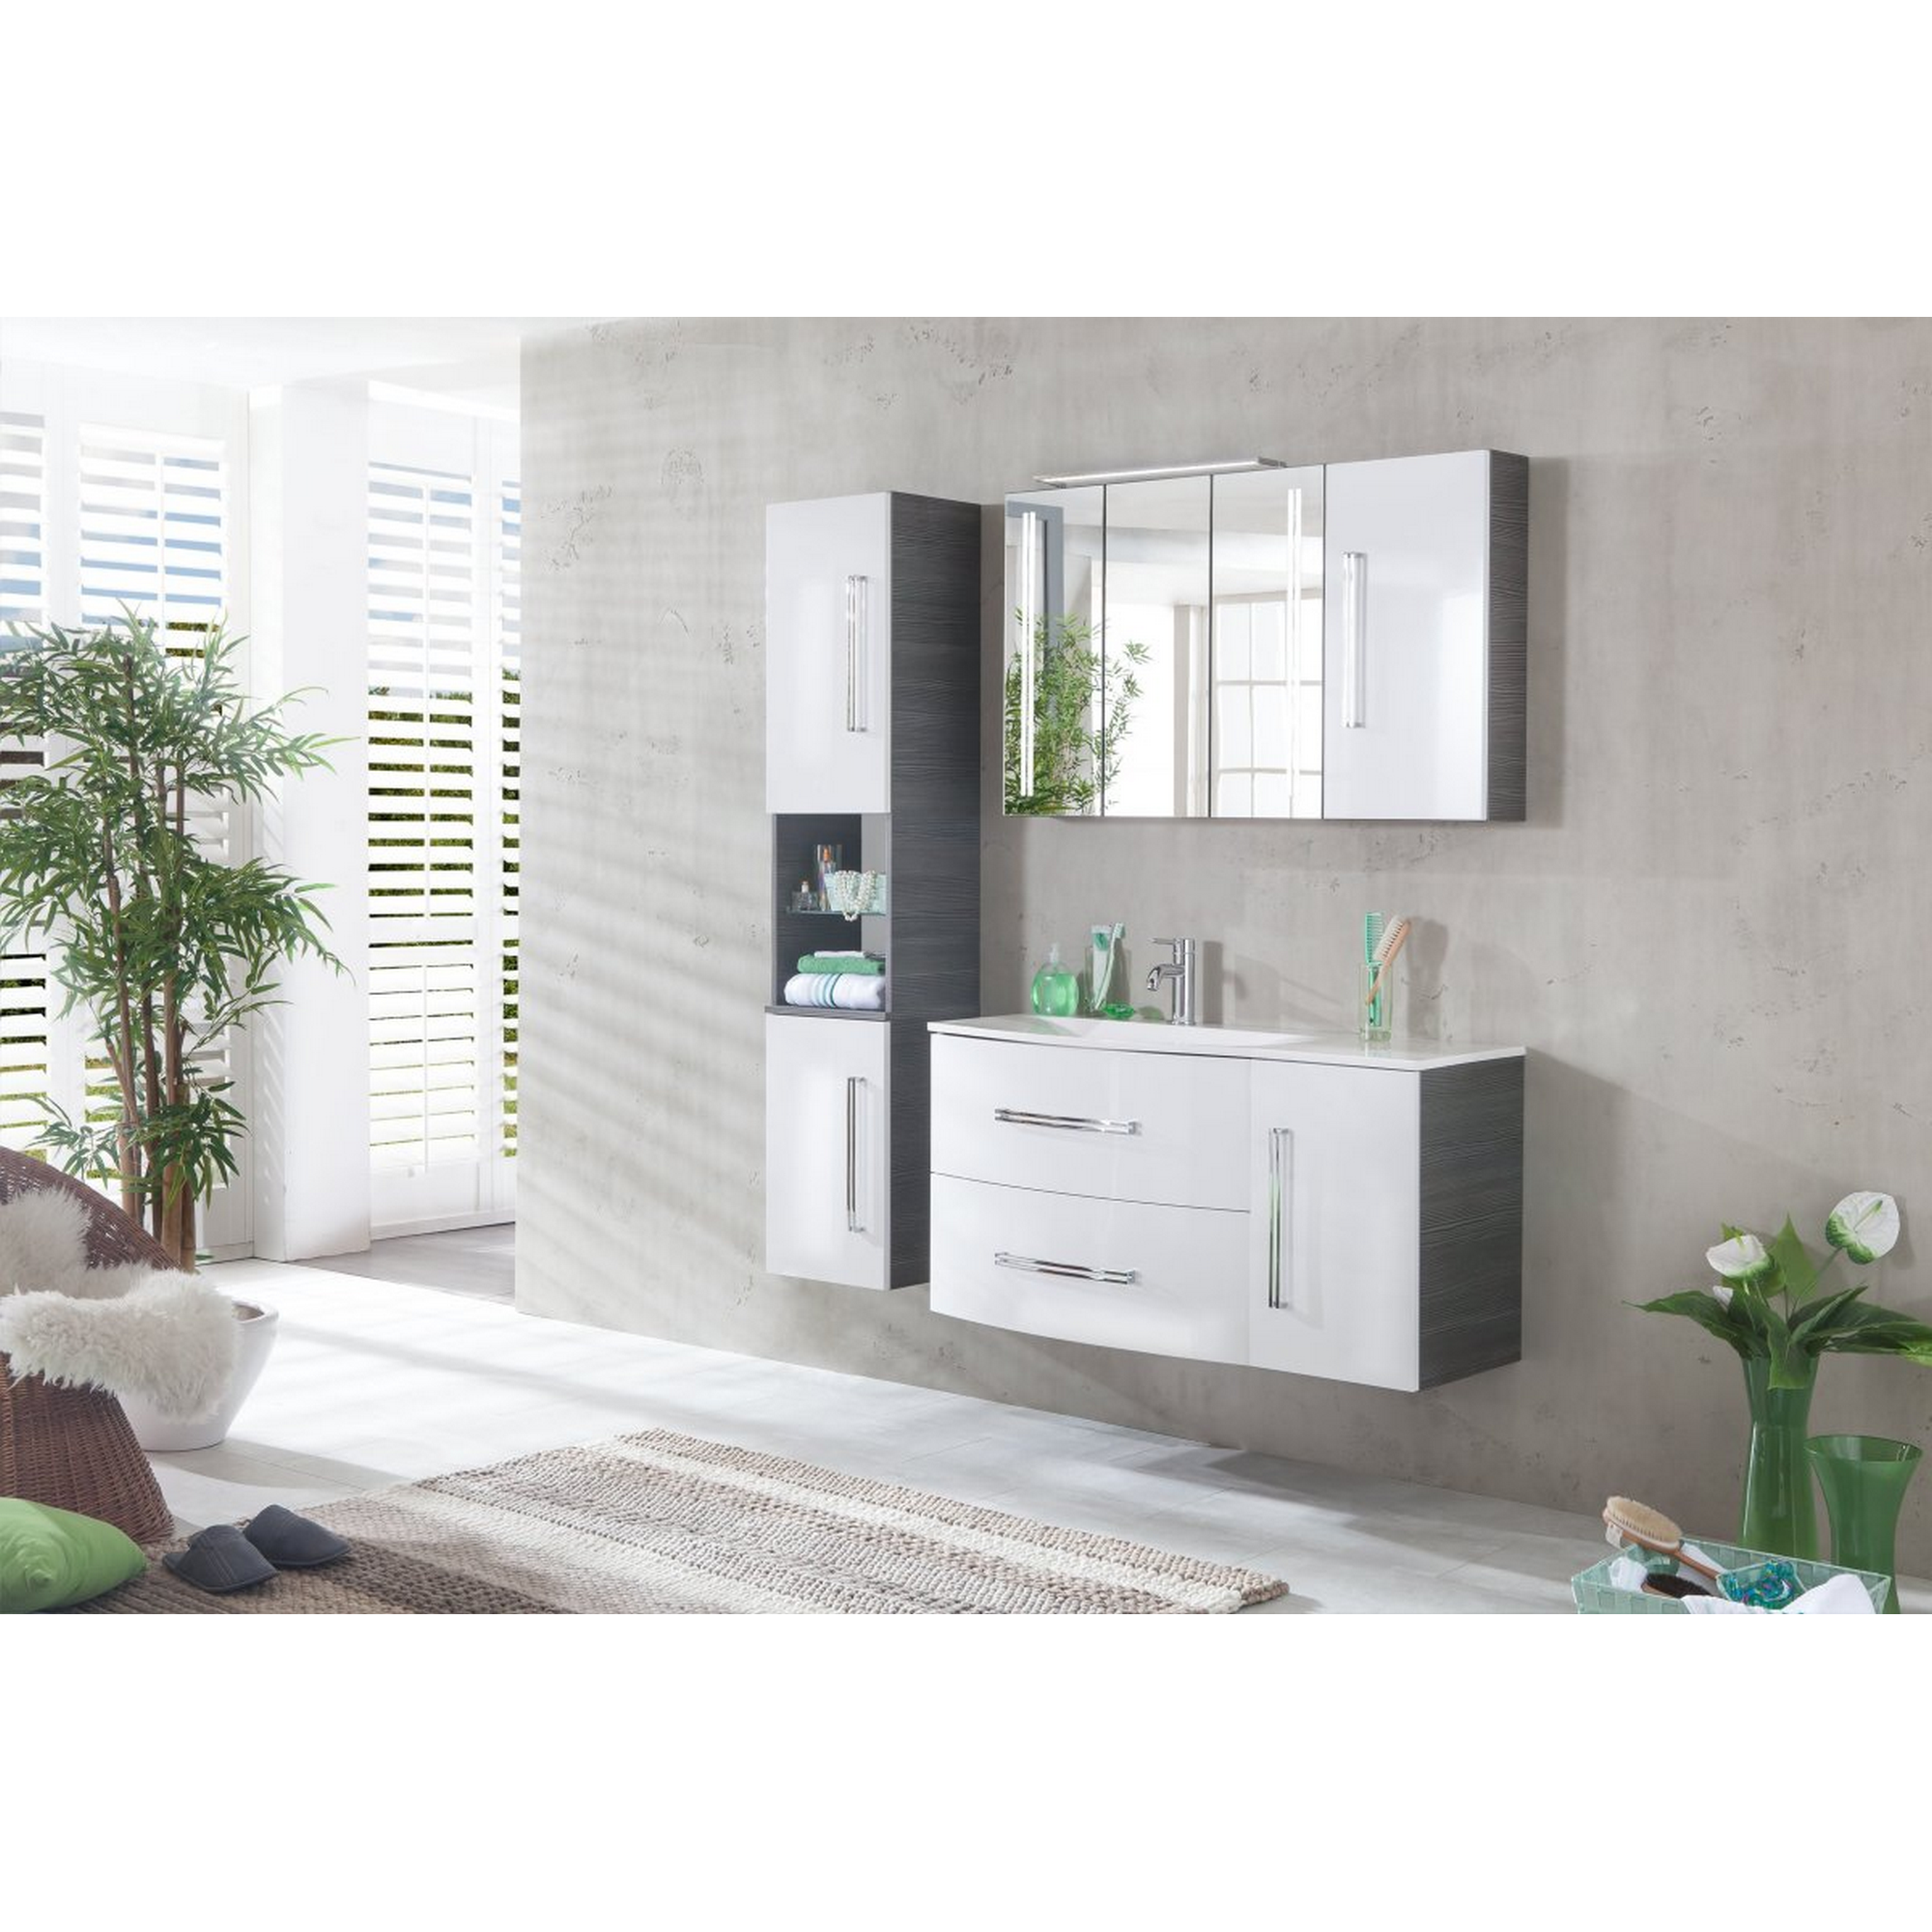 Waschtisch-Unterschrank 'Lugano' Pinie anthrazitfarben/weiß 79,5 x 57,5 x 45 cm + product picture